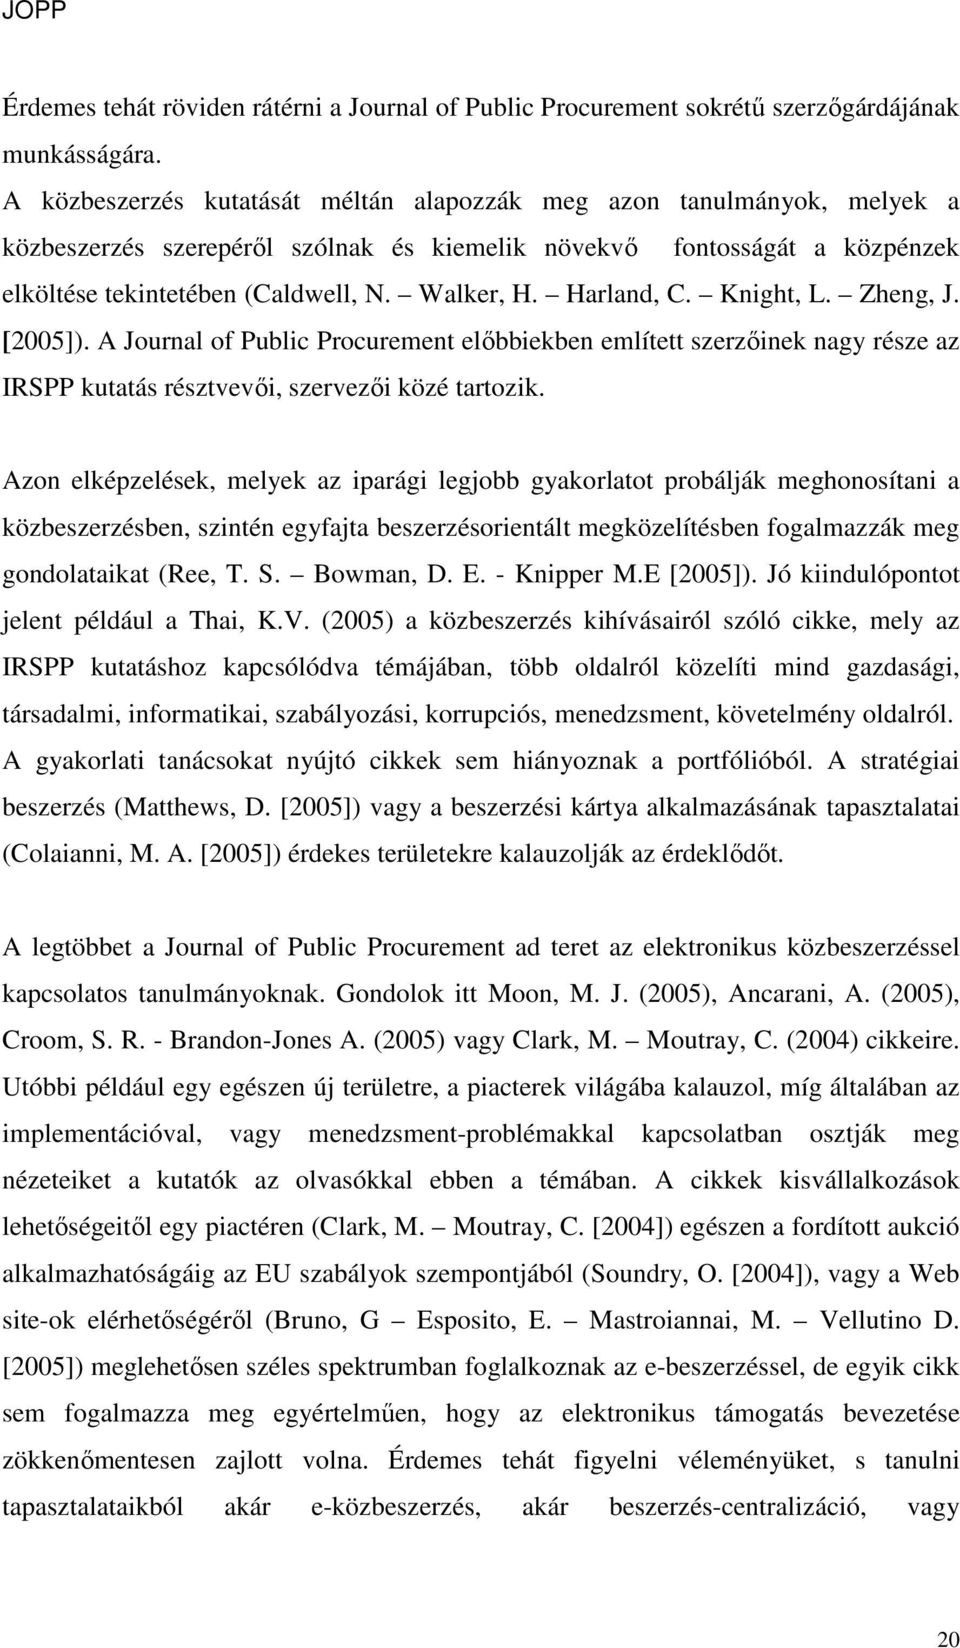 Harland, C. Knight, L. Zheng, J. [2005]). A Journal of Public Procurement elıbbiekben említett szerzıinek nagy része az IRSPP kutatás résztvevıi, szervezıi közé tartozik.